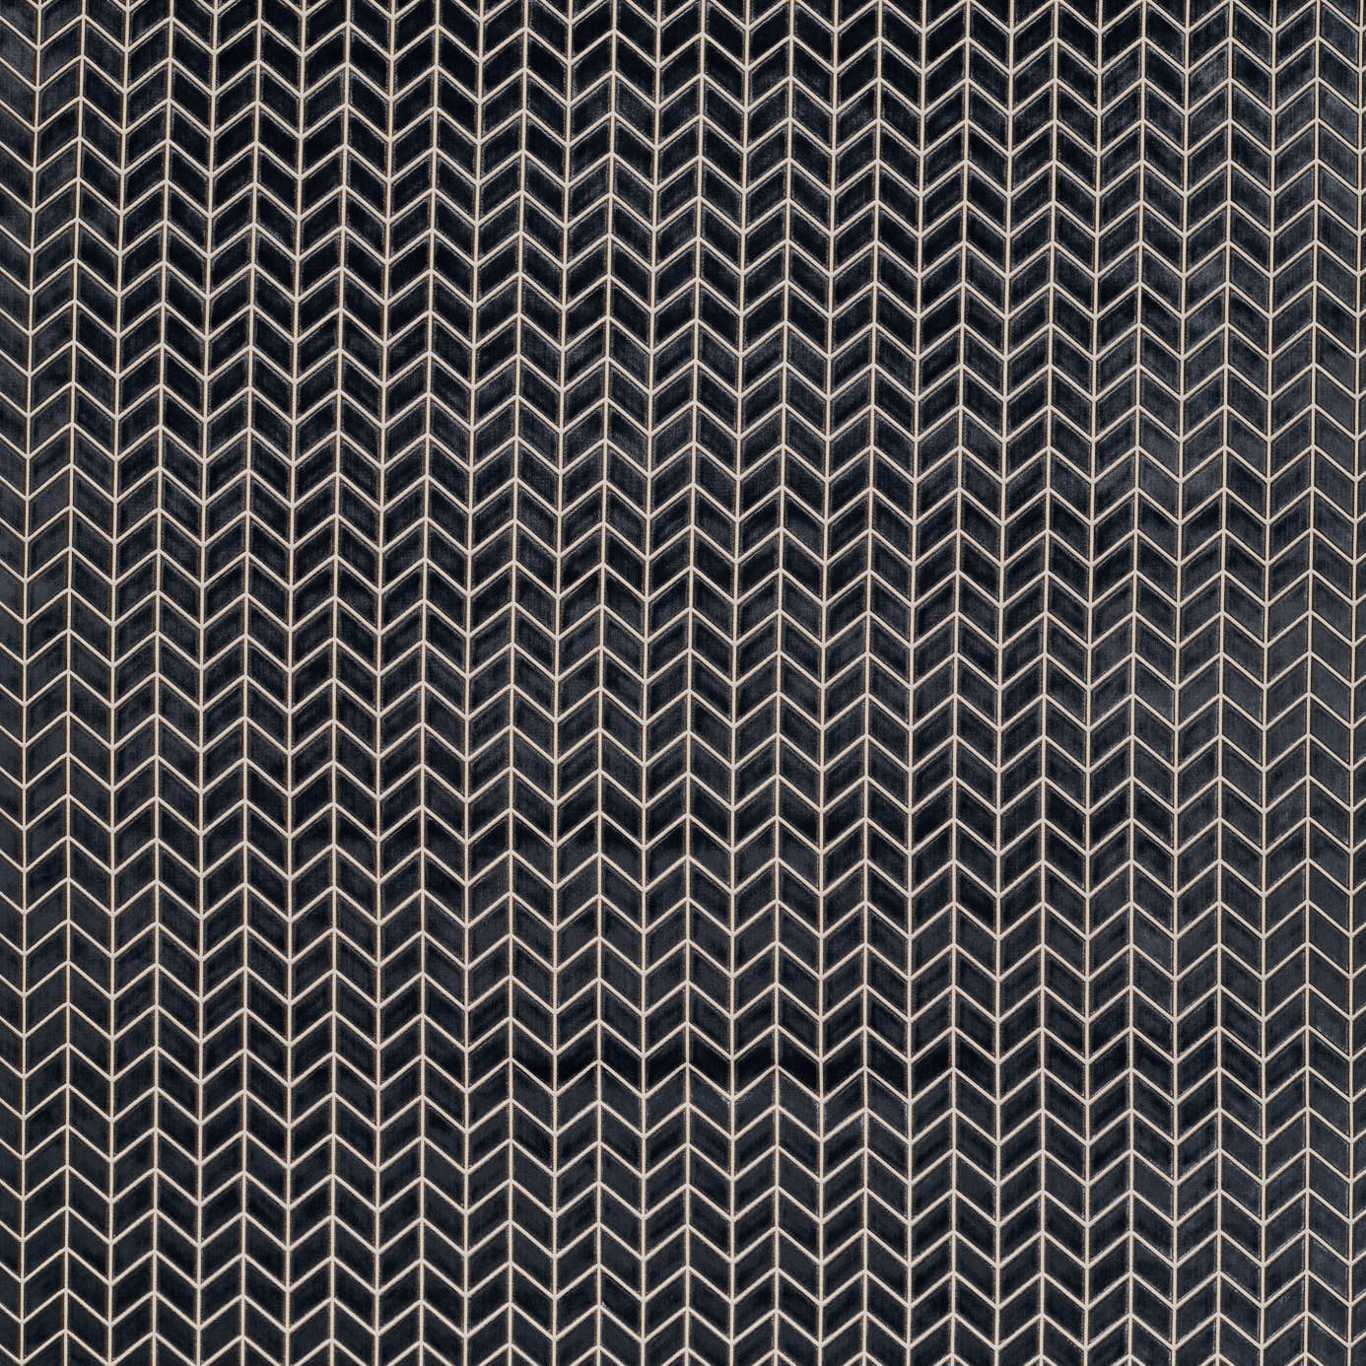 Perplex Graphite Fabric by HAR